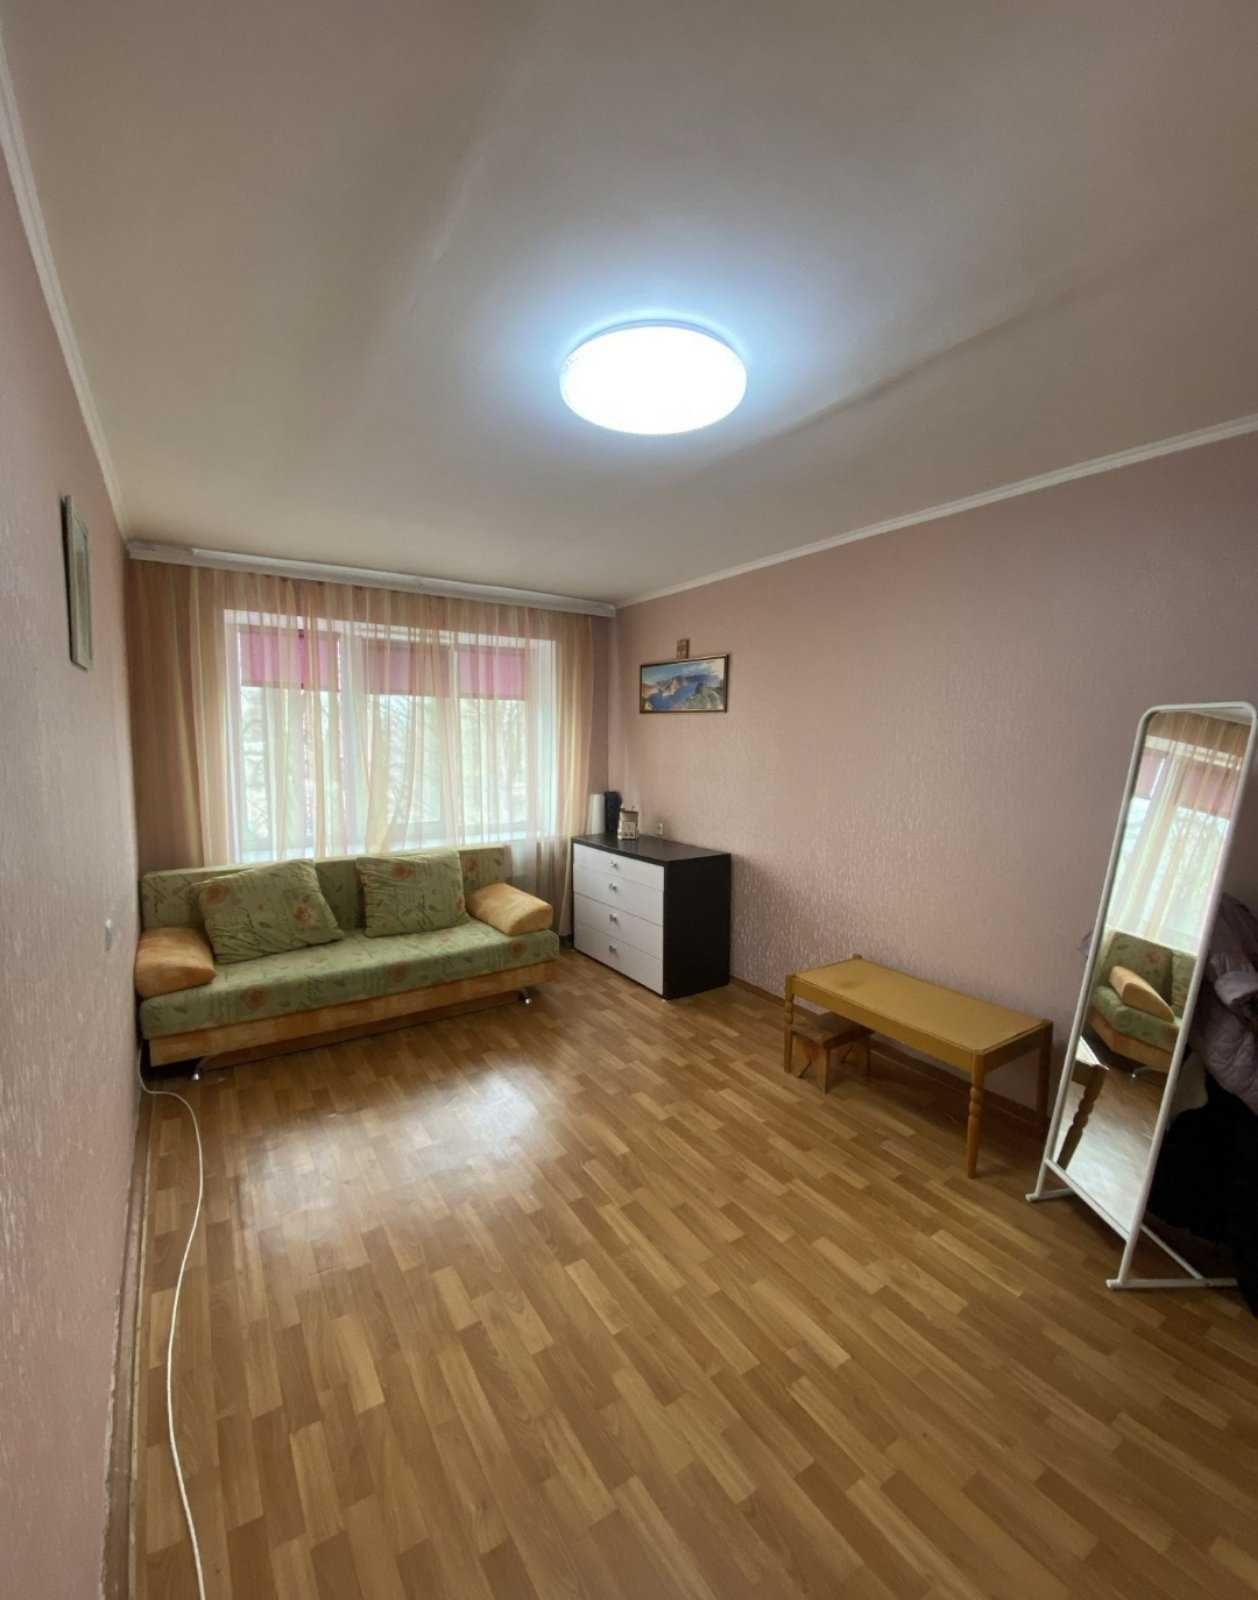 Продается 2 ком квартира по ул. Запорожского Козачества, Хортицкой р-н